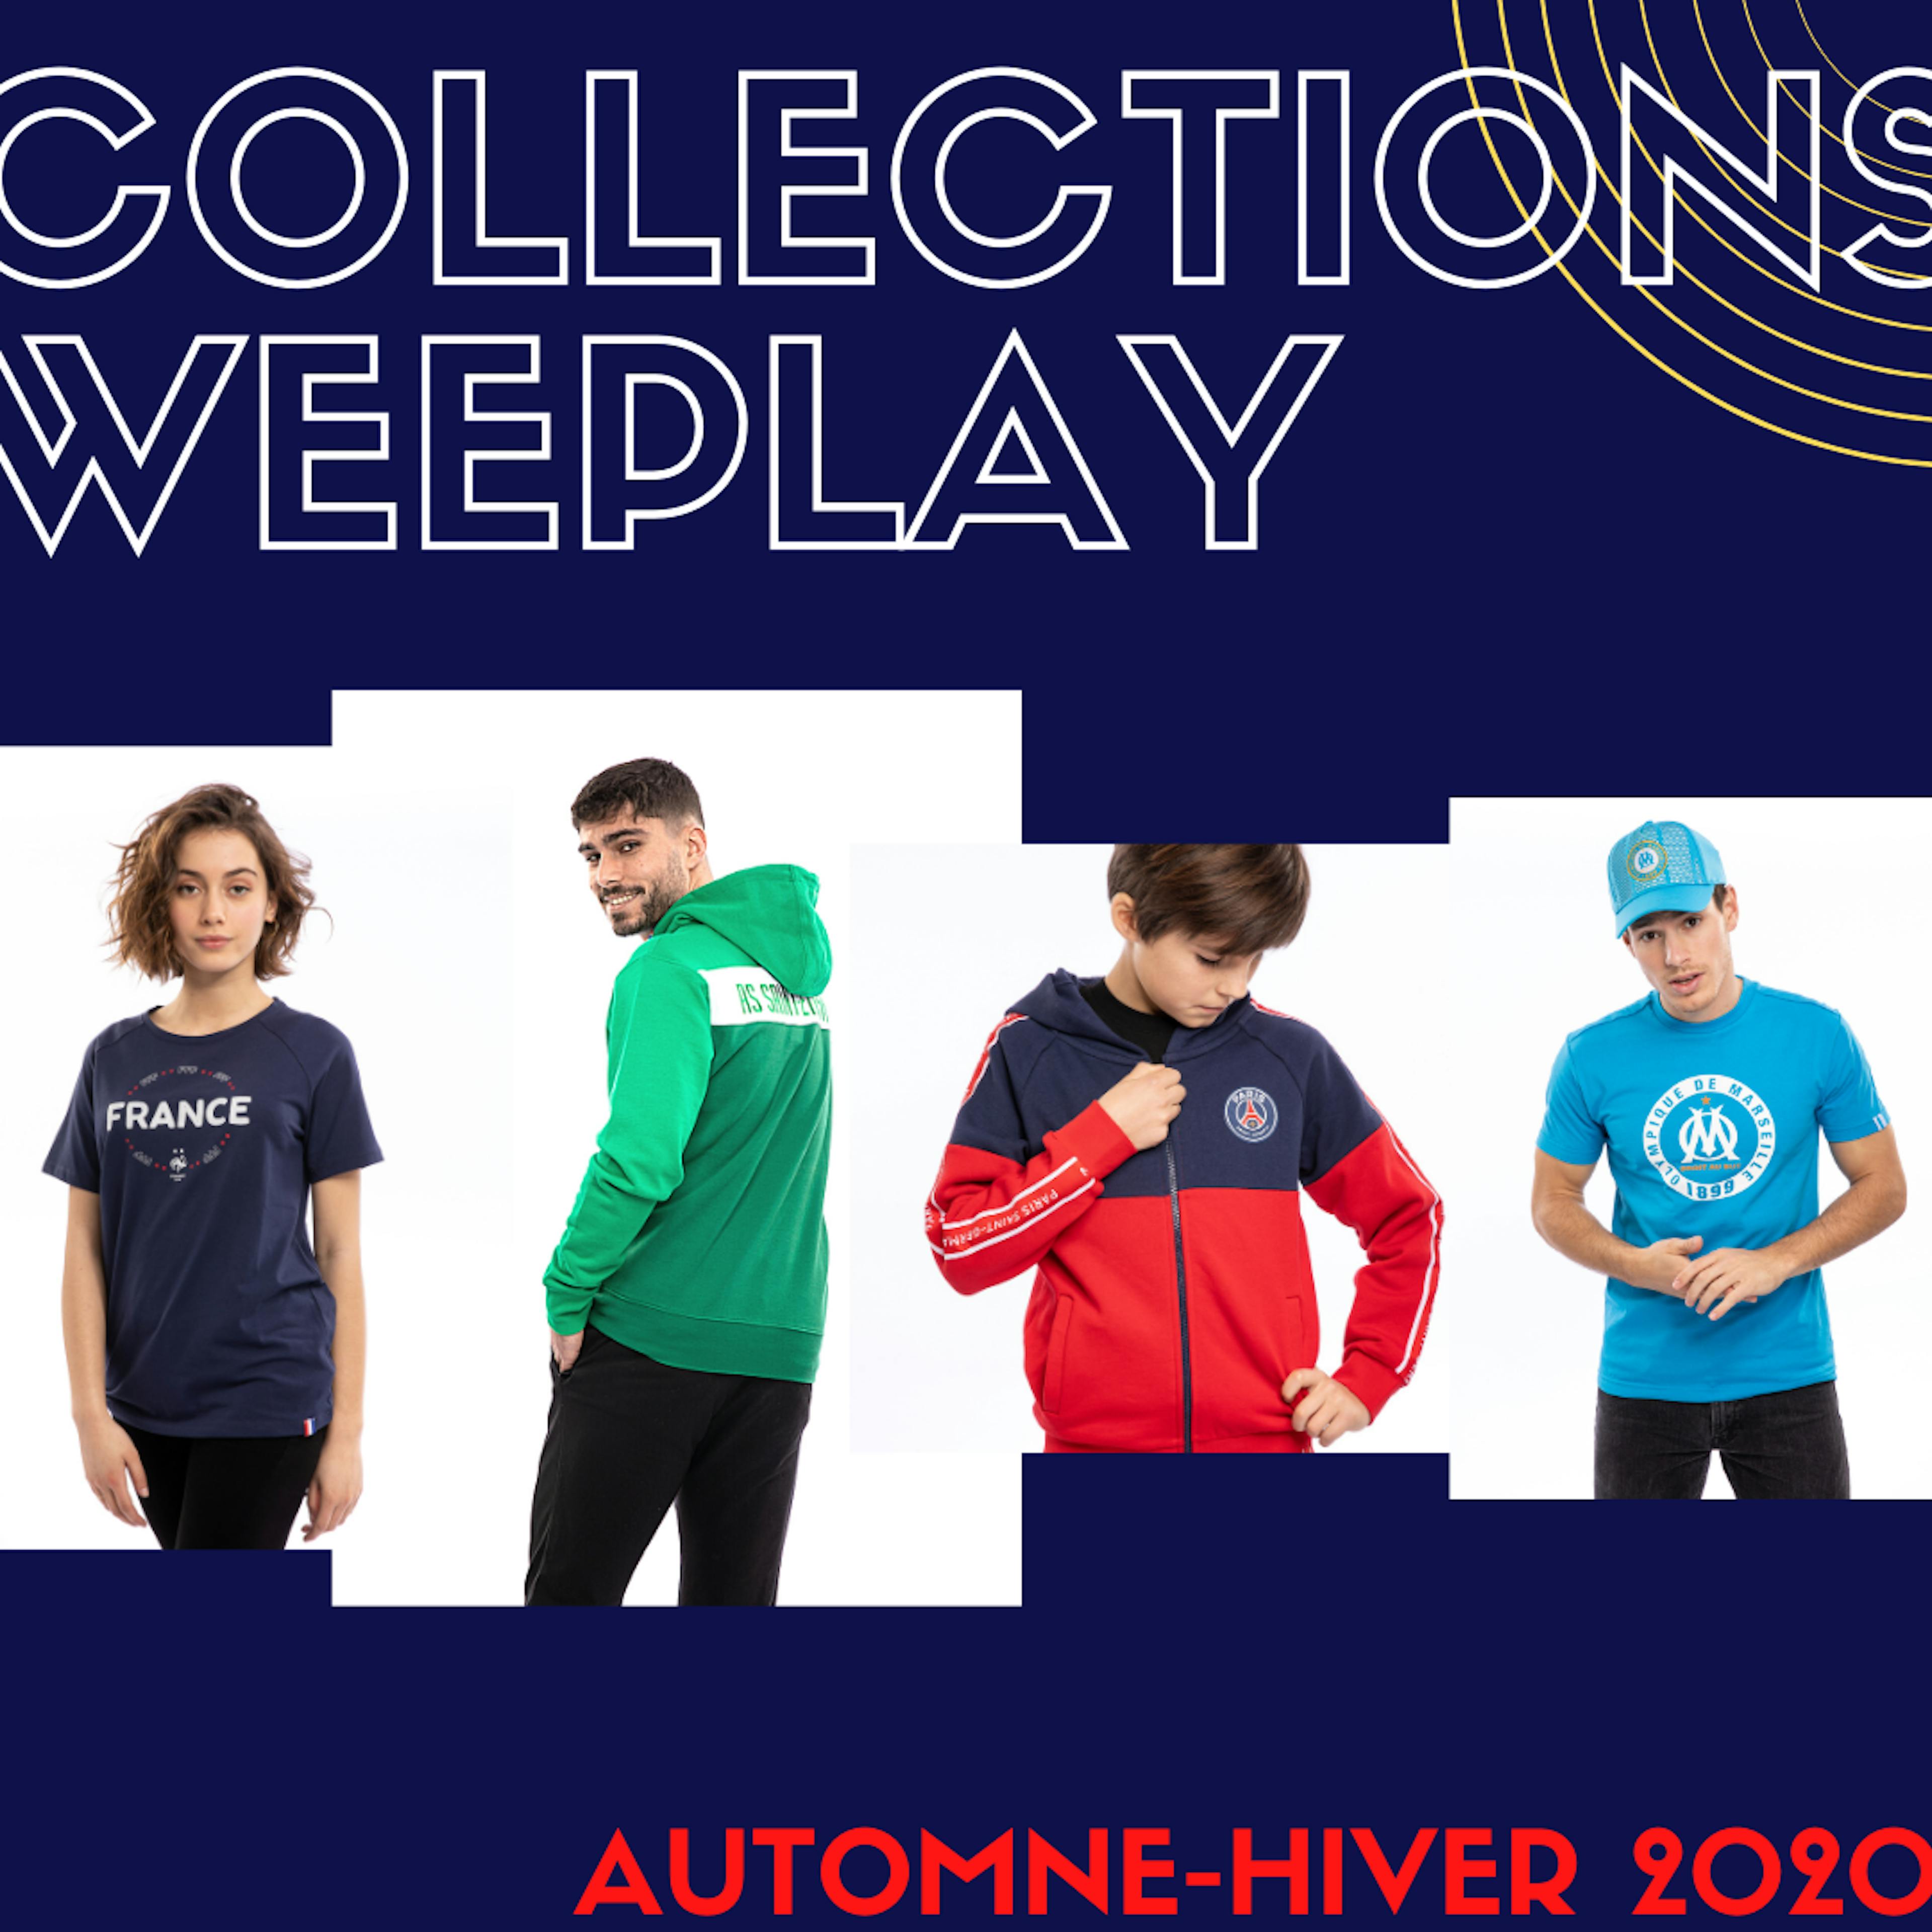 Les nouvelles collections Automne-Hiver sont disponibles